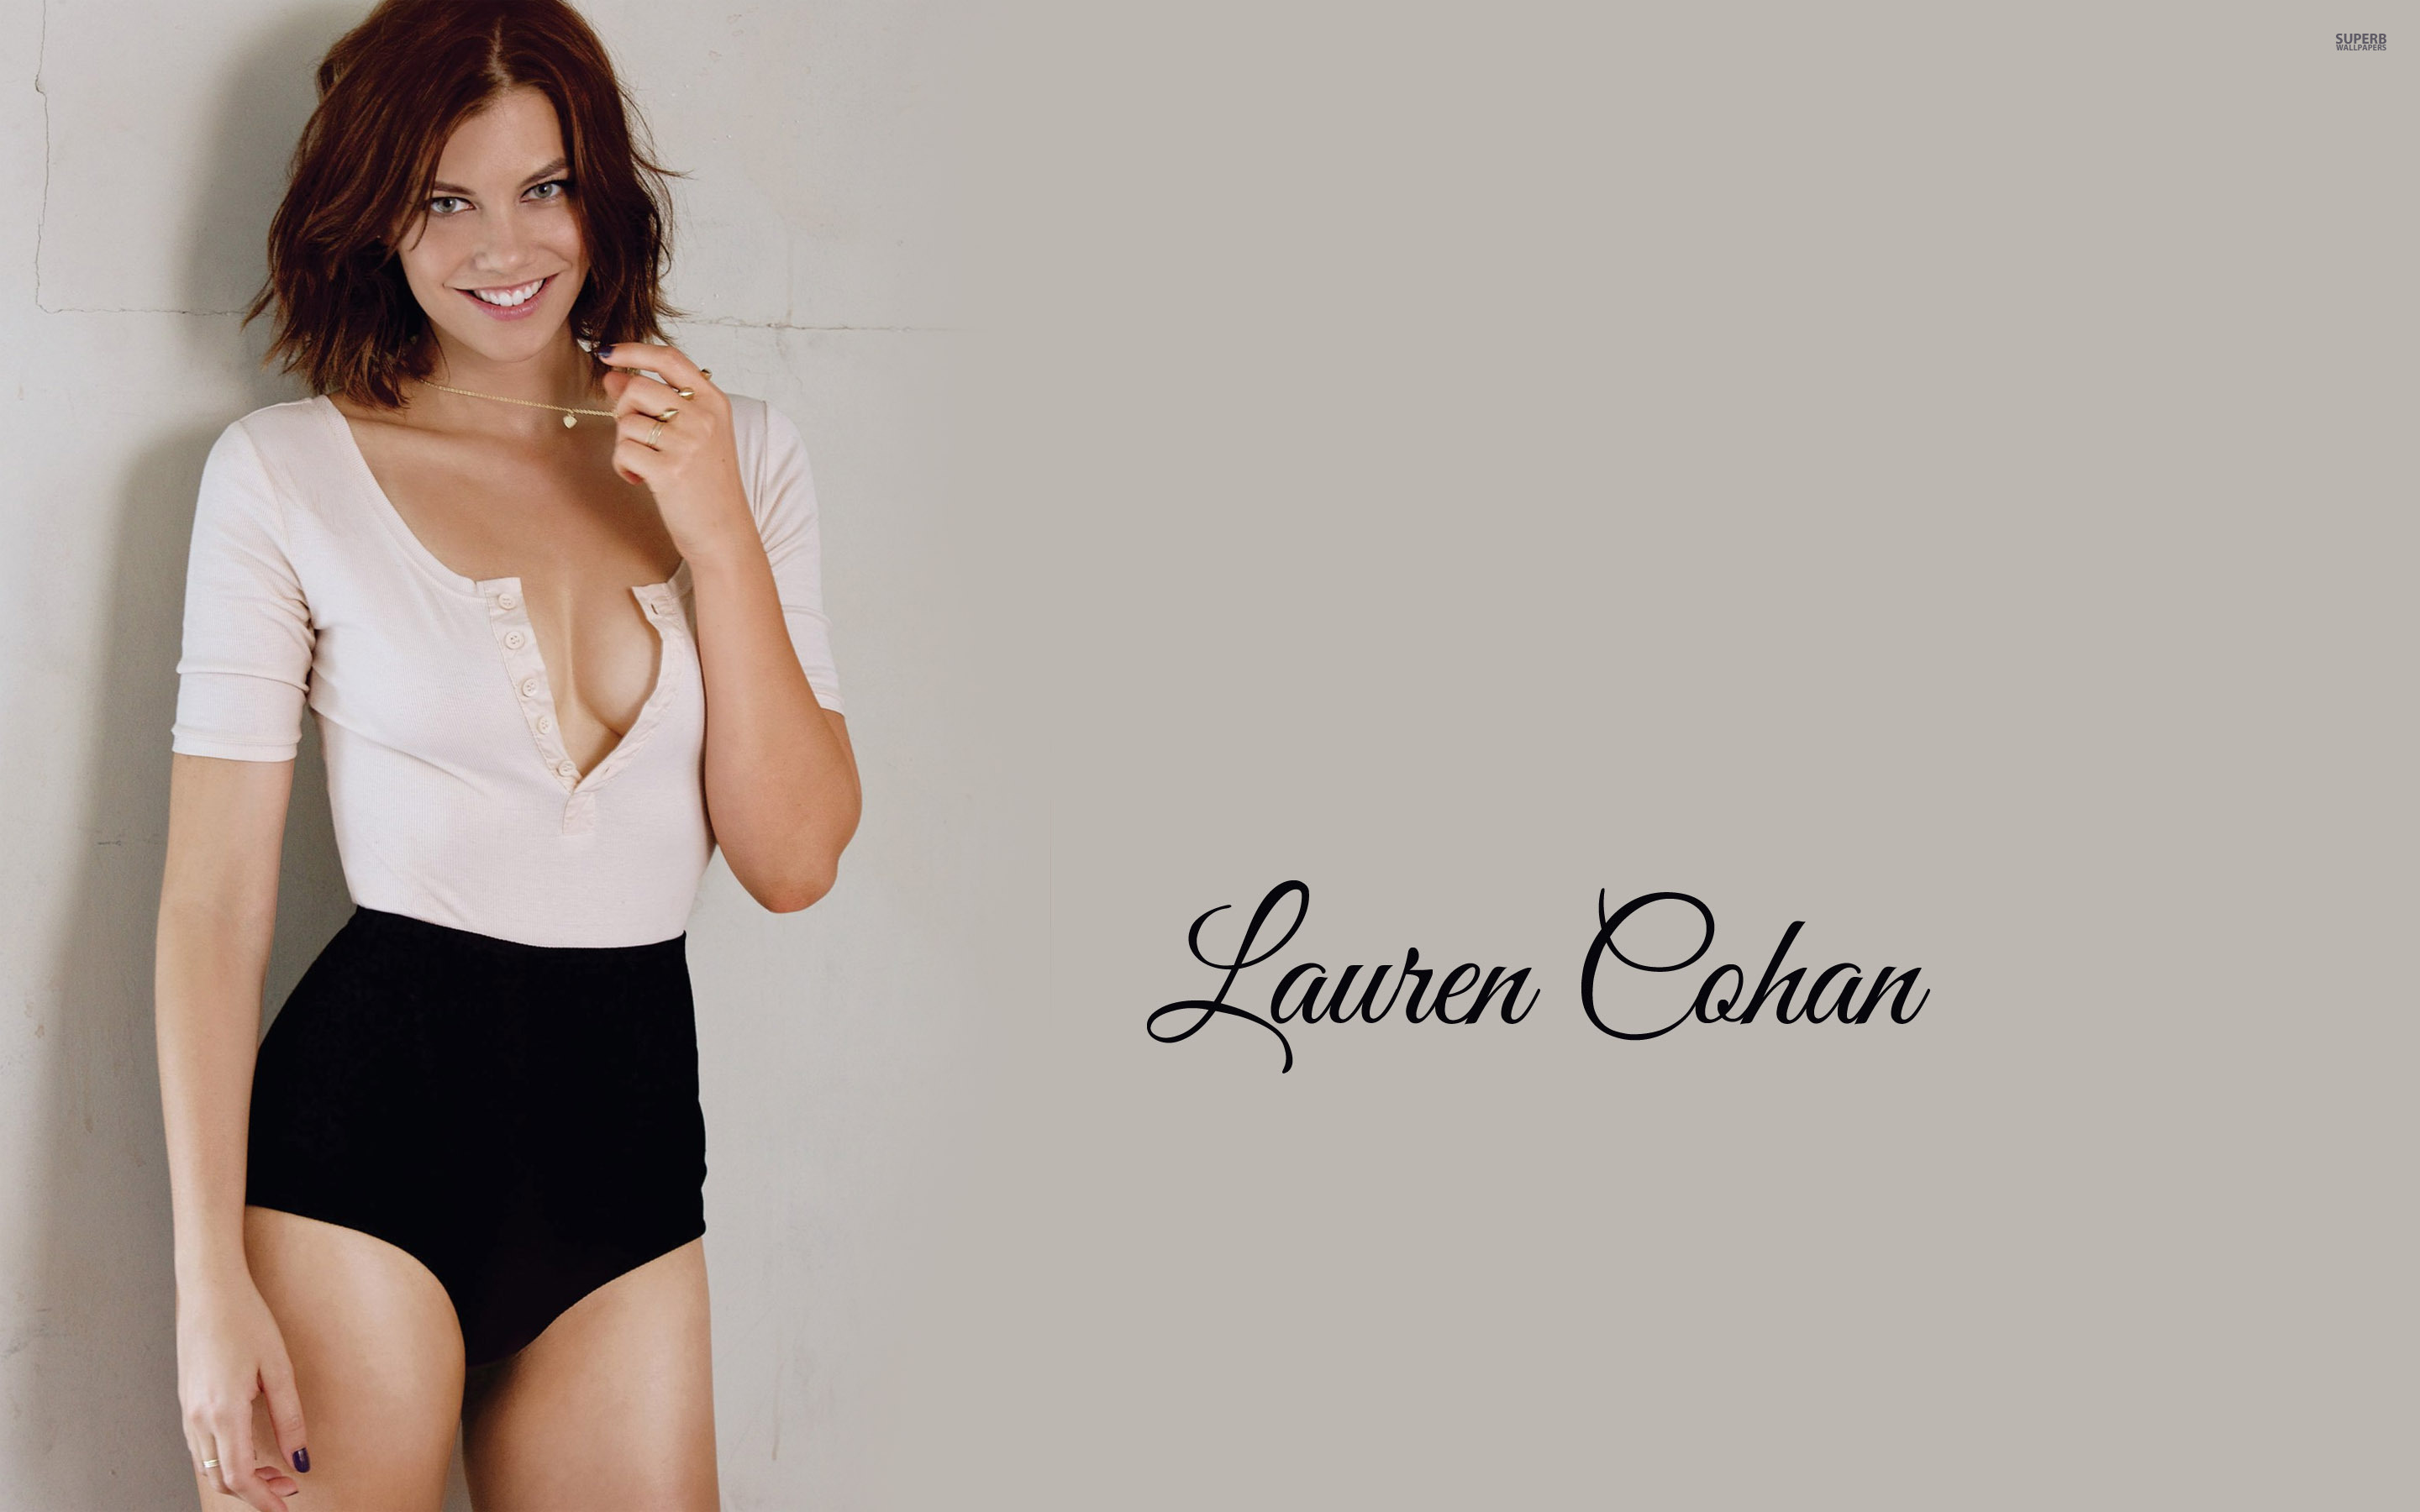 Lauren Cohan Photo Shoot - Lauren Cohan Wallpaper Hd , HD Wallpaper & Backgrounds